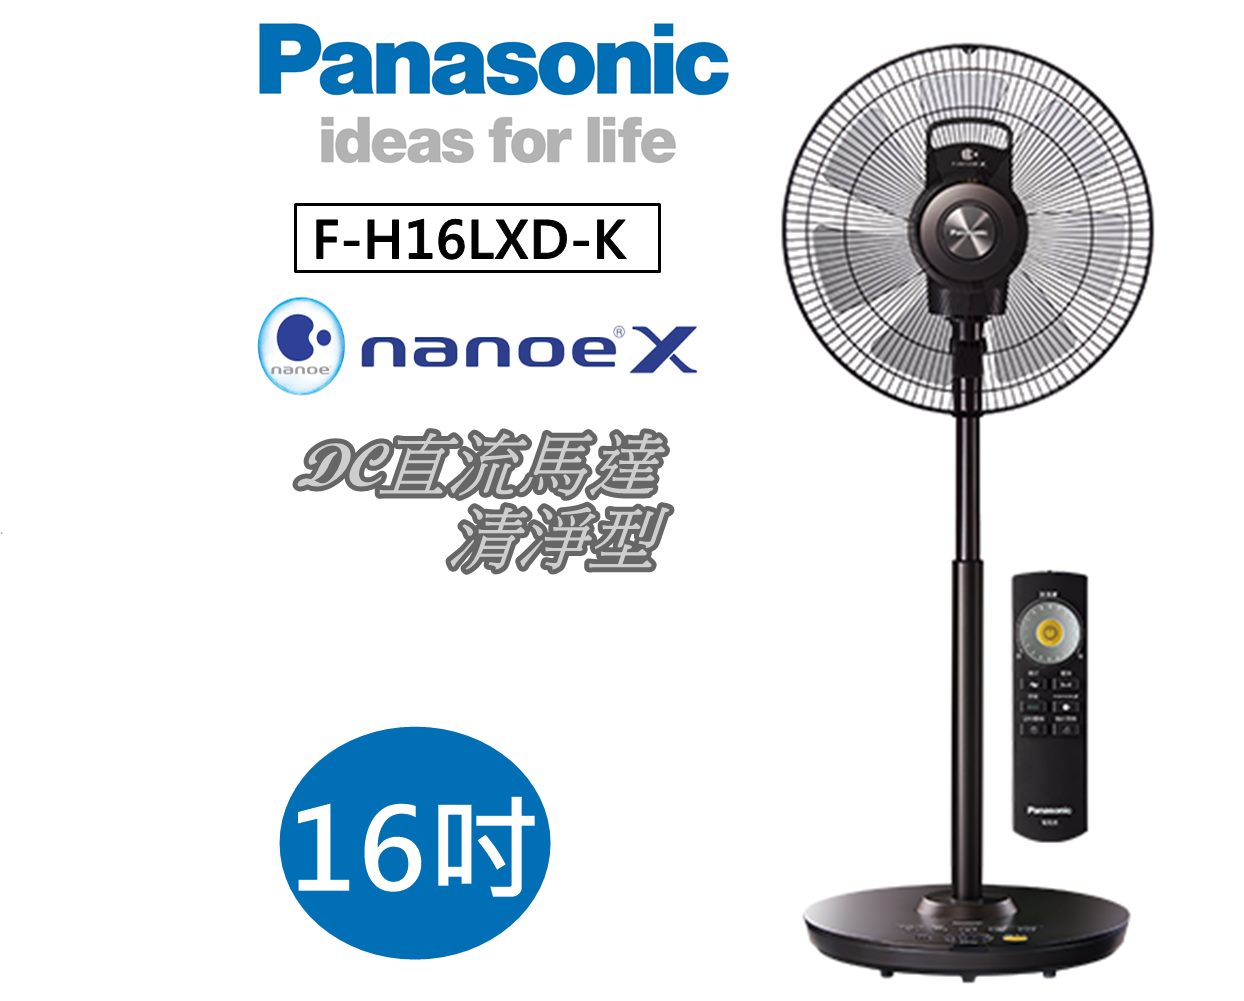 【6月領券再97折+限時95折】Panasonic 國際牌 F-H16LXD-K 清靜型 DC直流風扇 nanoeX 公司貨